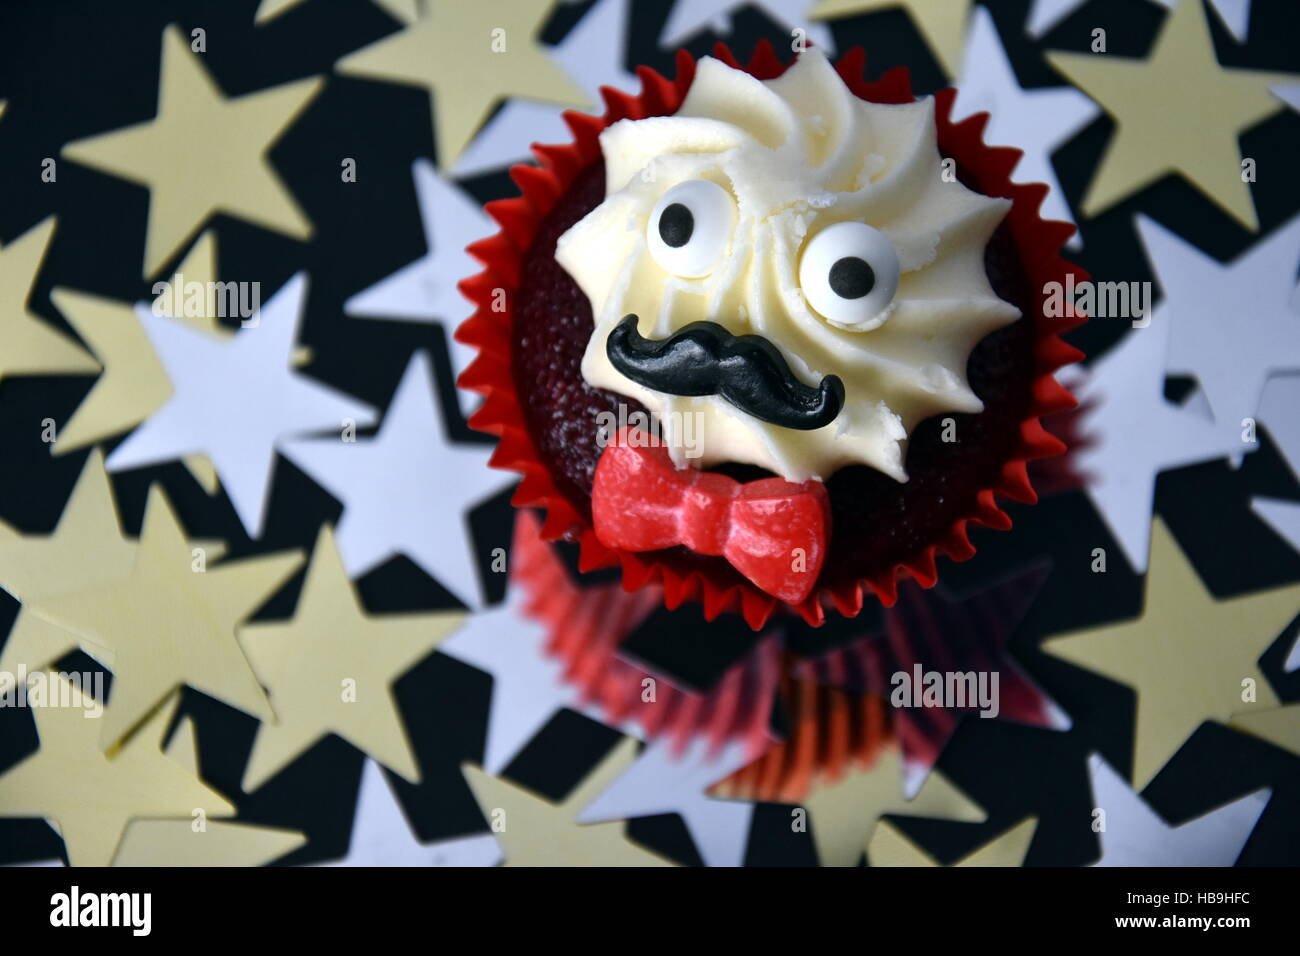 Cupcake avec une moustache noire, noeud papillon rouge et blanc crème sur  le dessus. La sensibilisation au cancer de Movember en novembre mois.  Campagne contre l'importance de la prostate Movember Photo Stock -